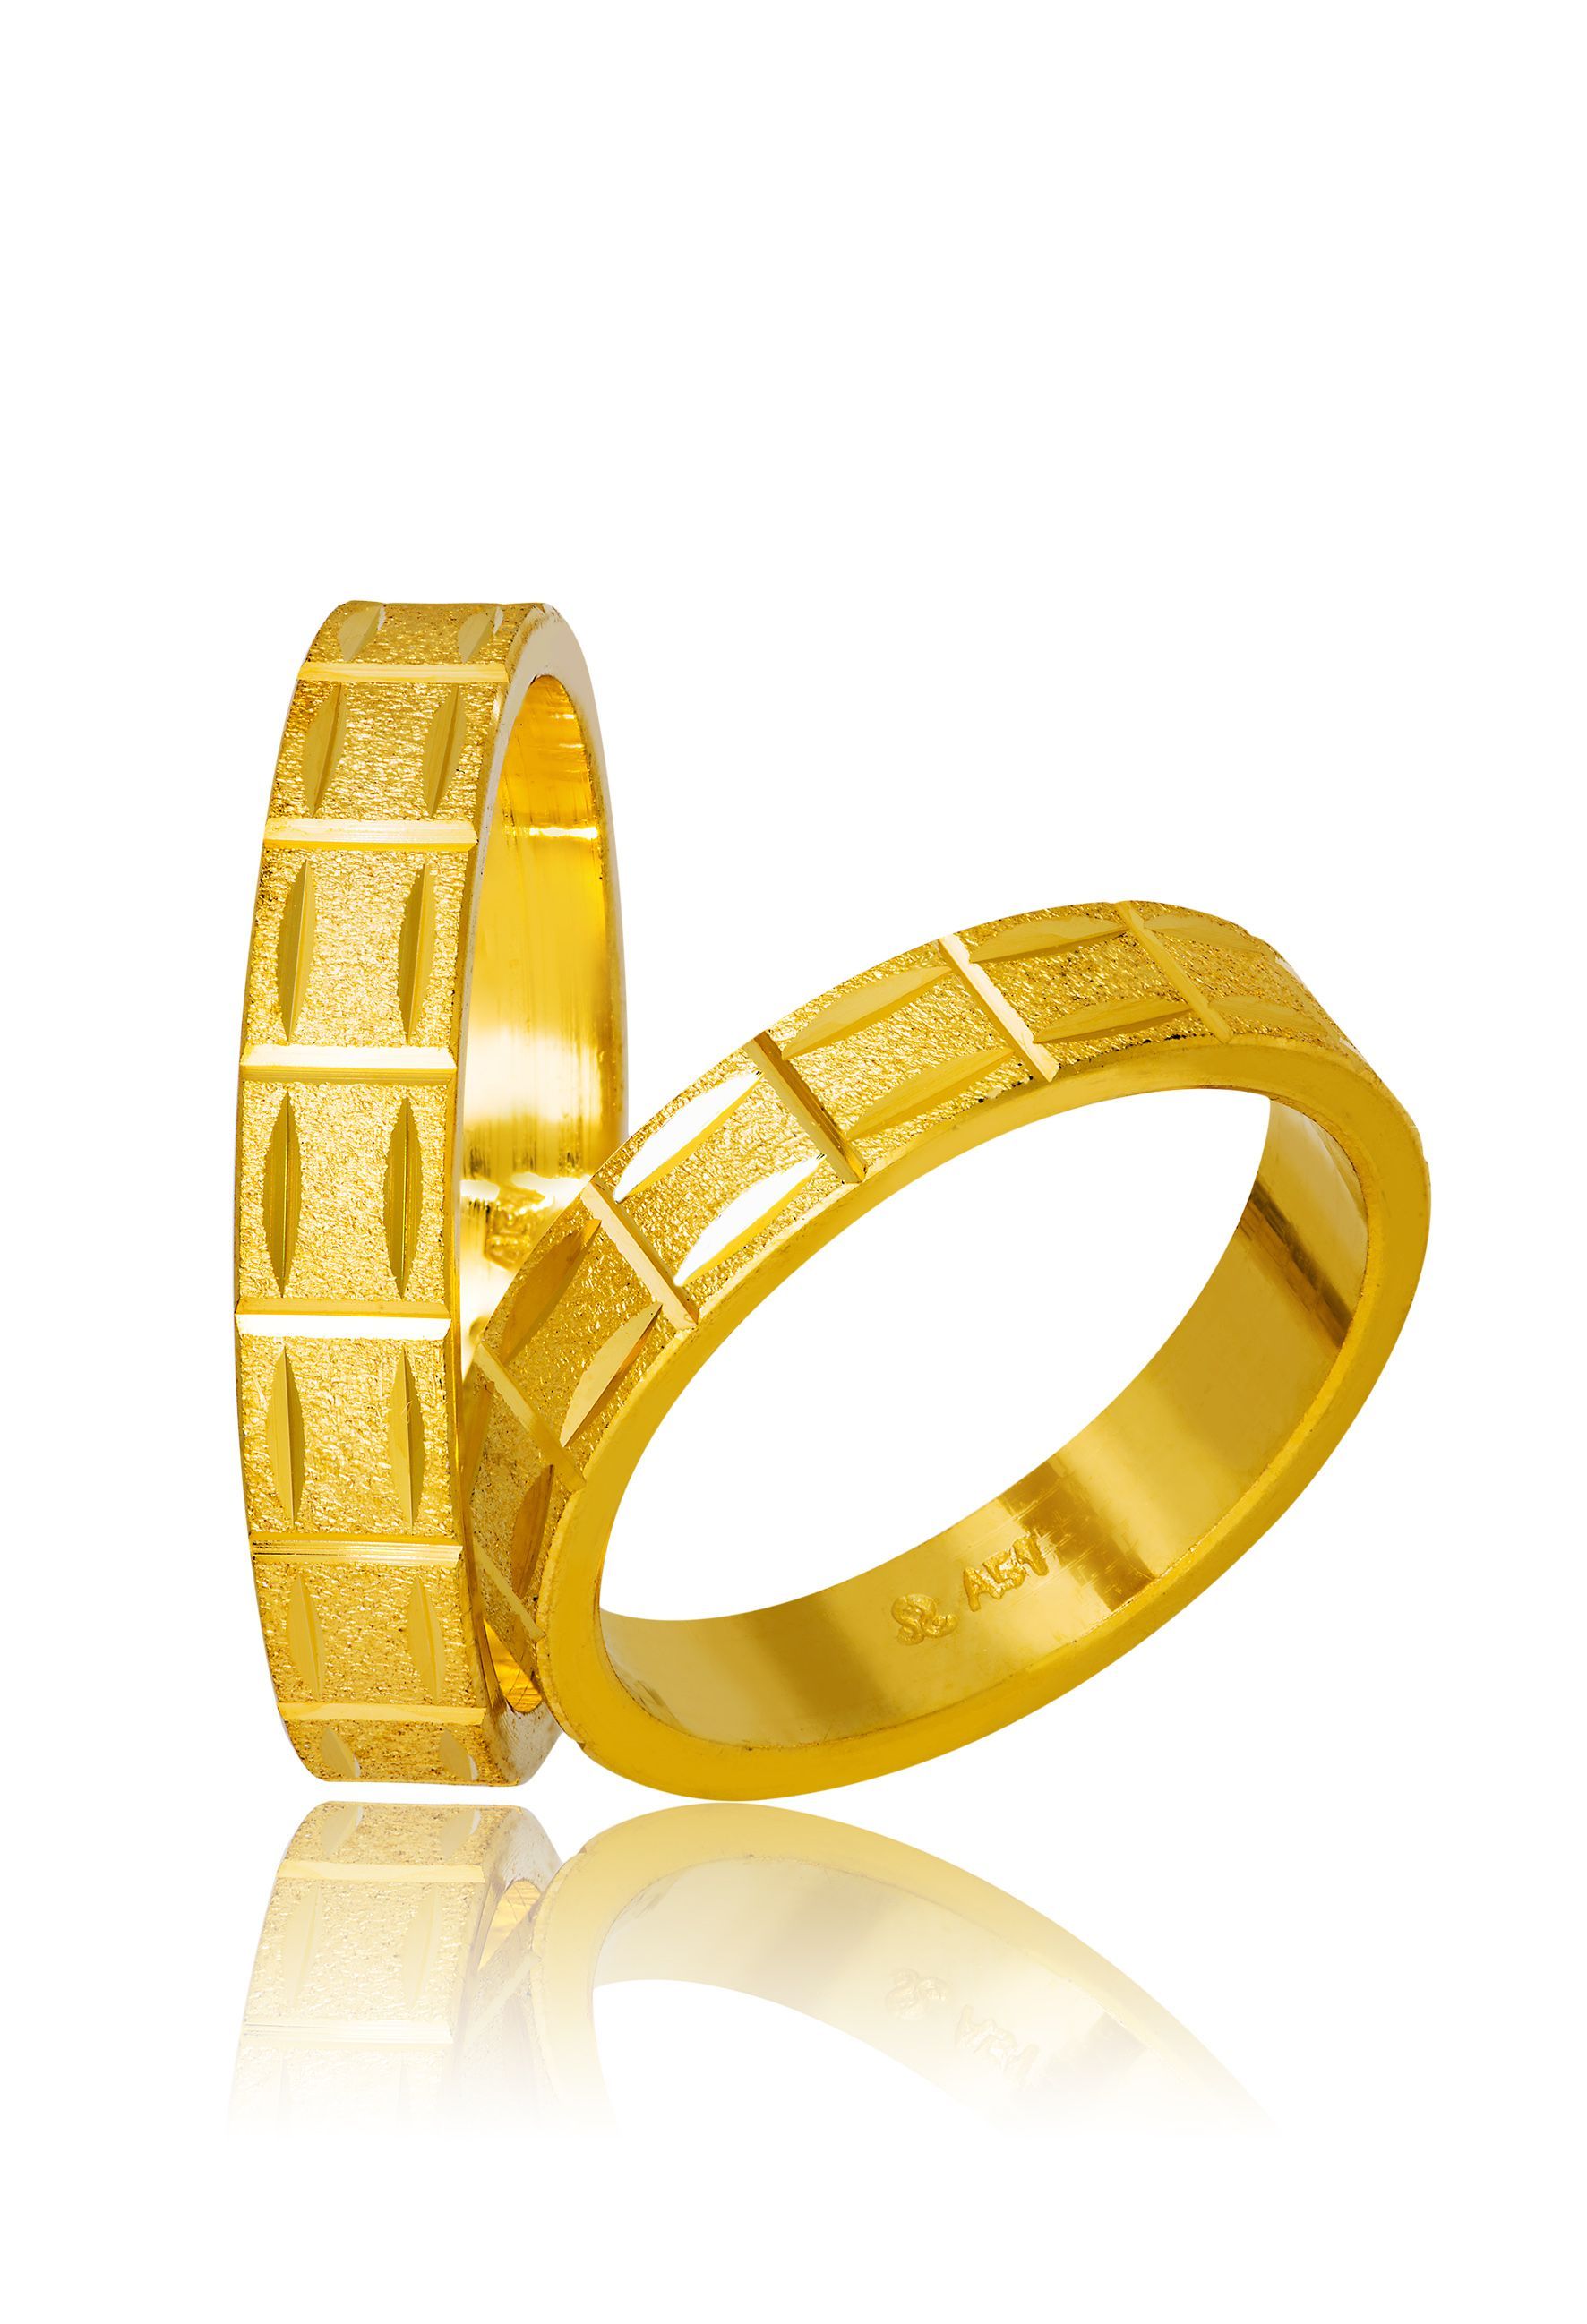 Golden wedding rings 4.3mm (code 758)